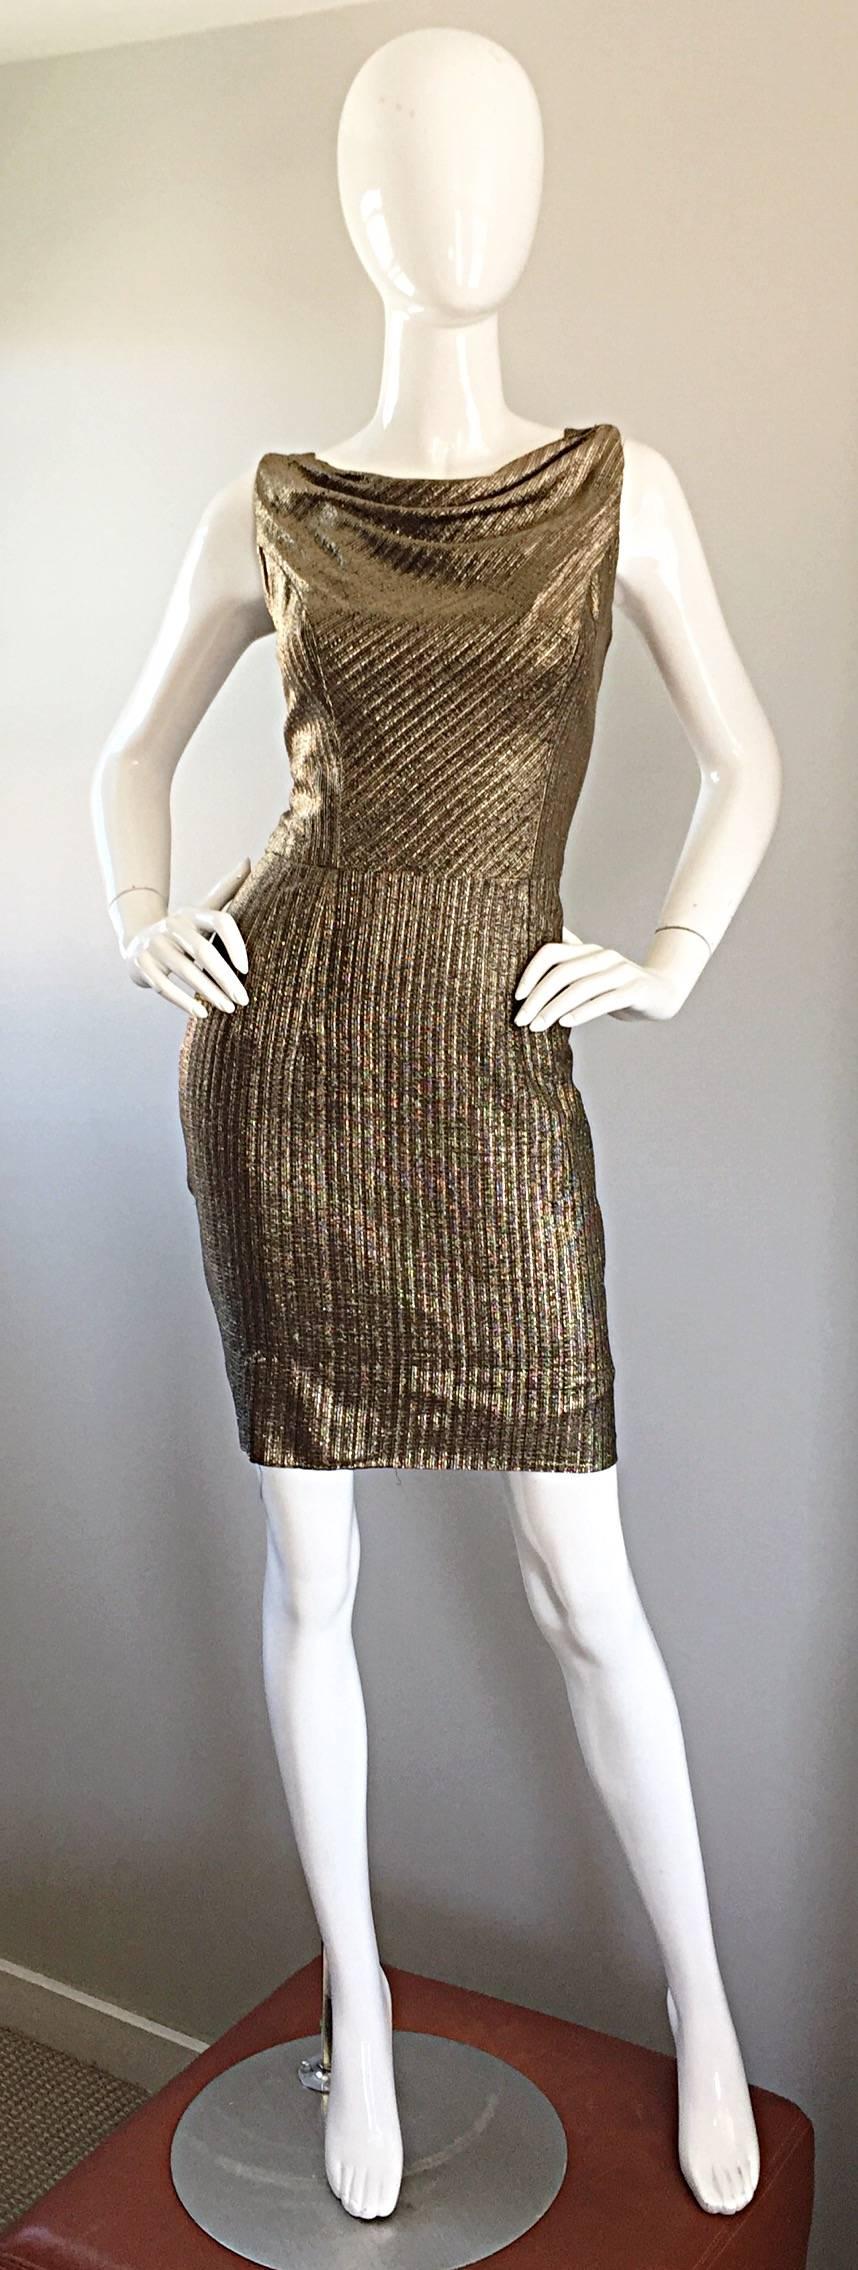 Schön und schmeichelhaft späten 1950er Jahren Vintage Seide metallischen wiggle Kleid! Bei der Konstruktion dieses Schmuckstücks wurde unglaublich viel Wert auf Details gelegt. Wunderschöne goldene Bronzefarbe. Es handelt sich eindeutig um einen